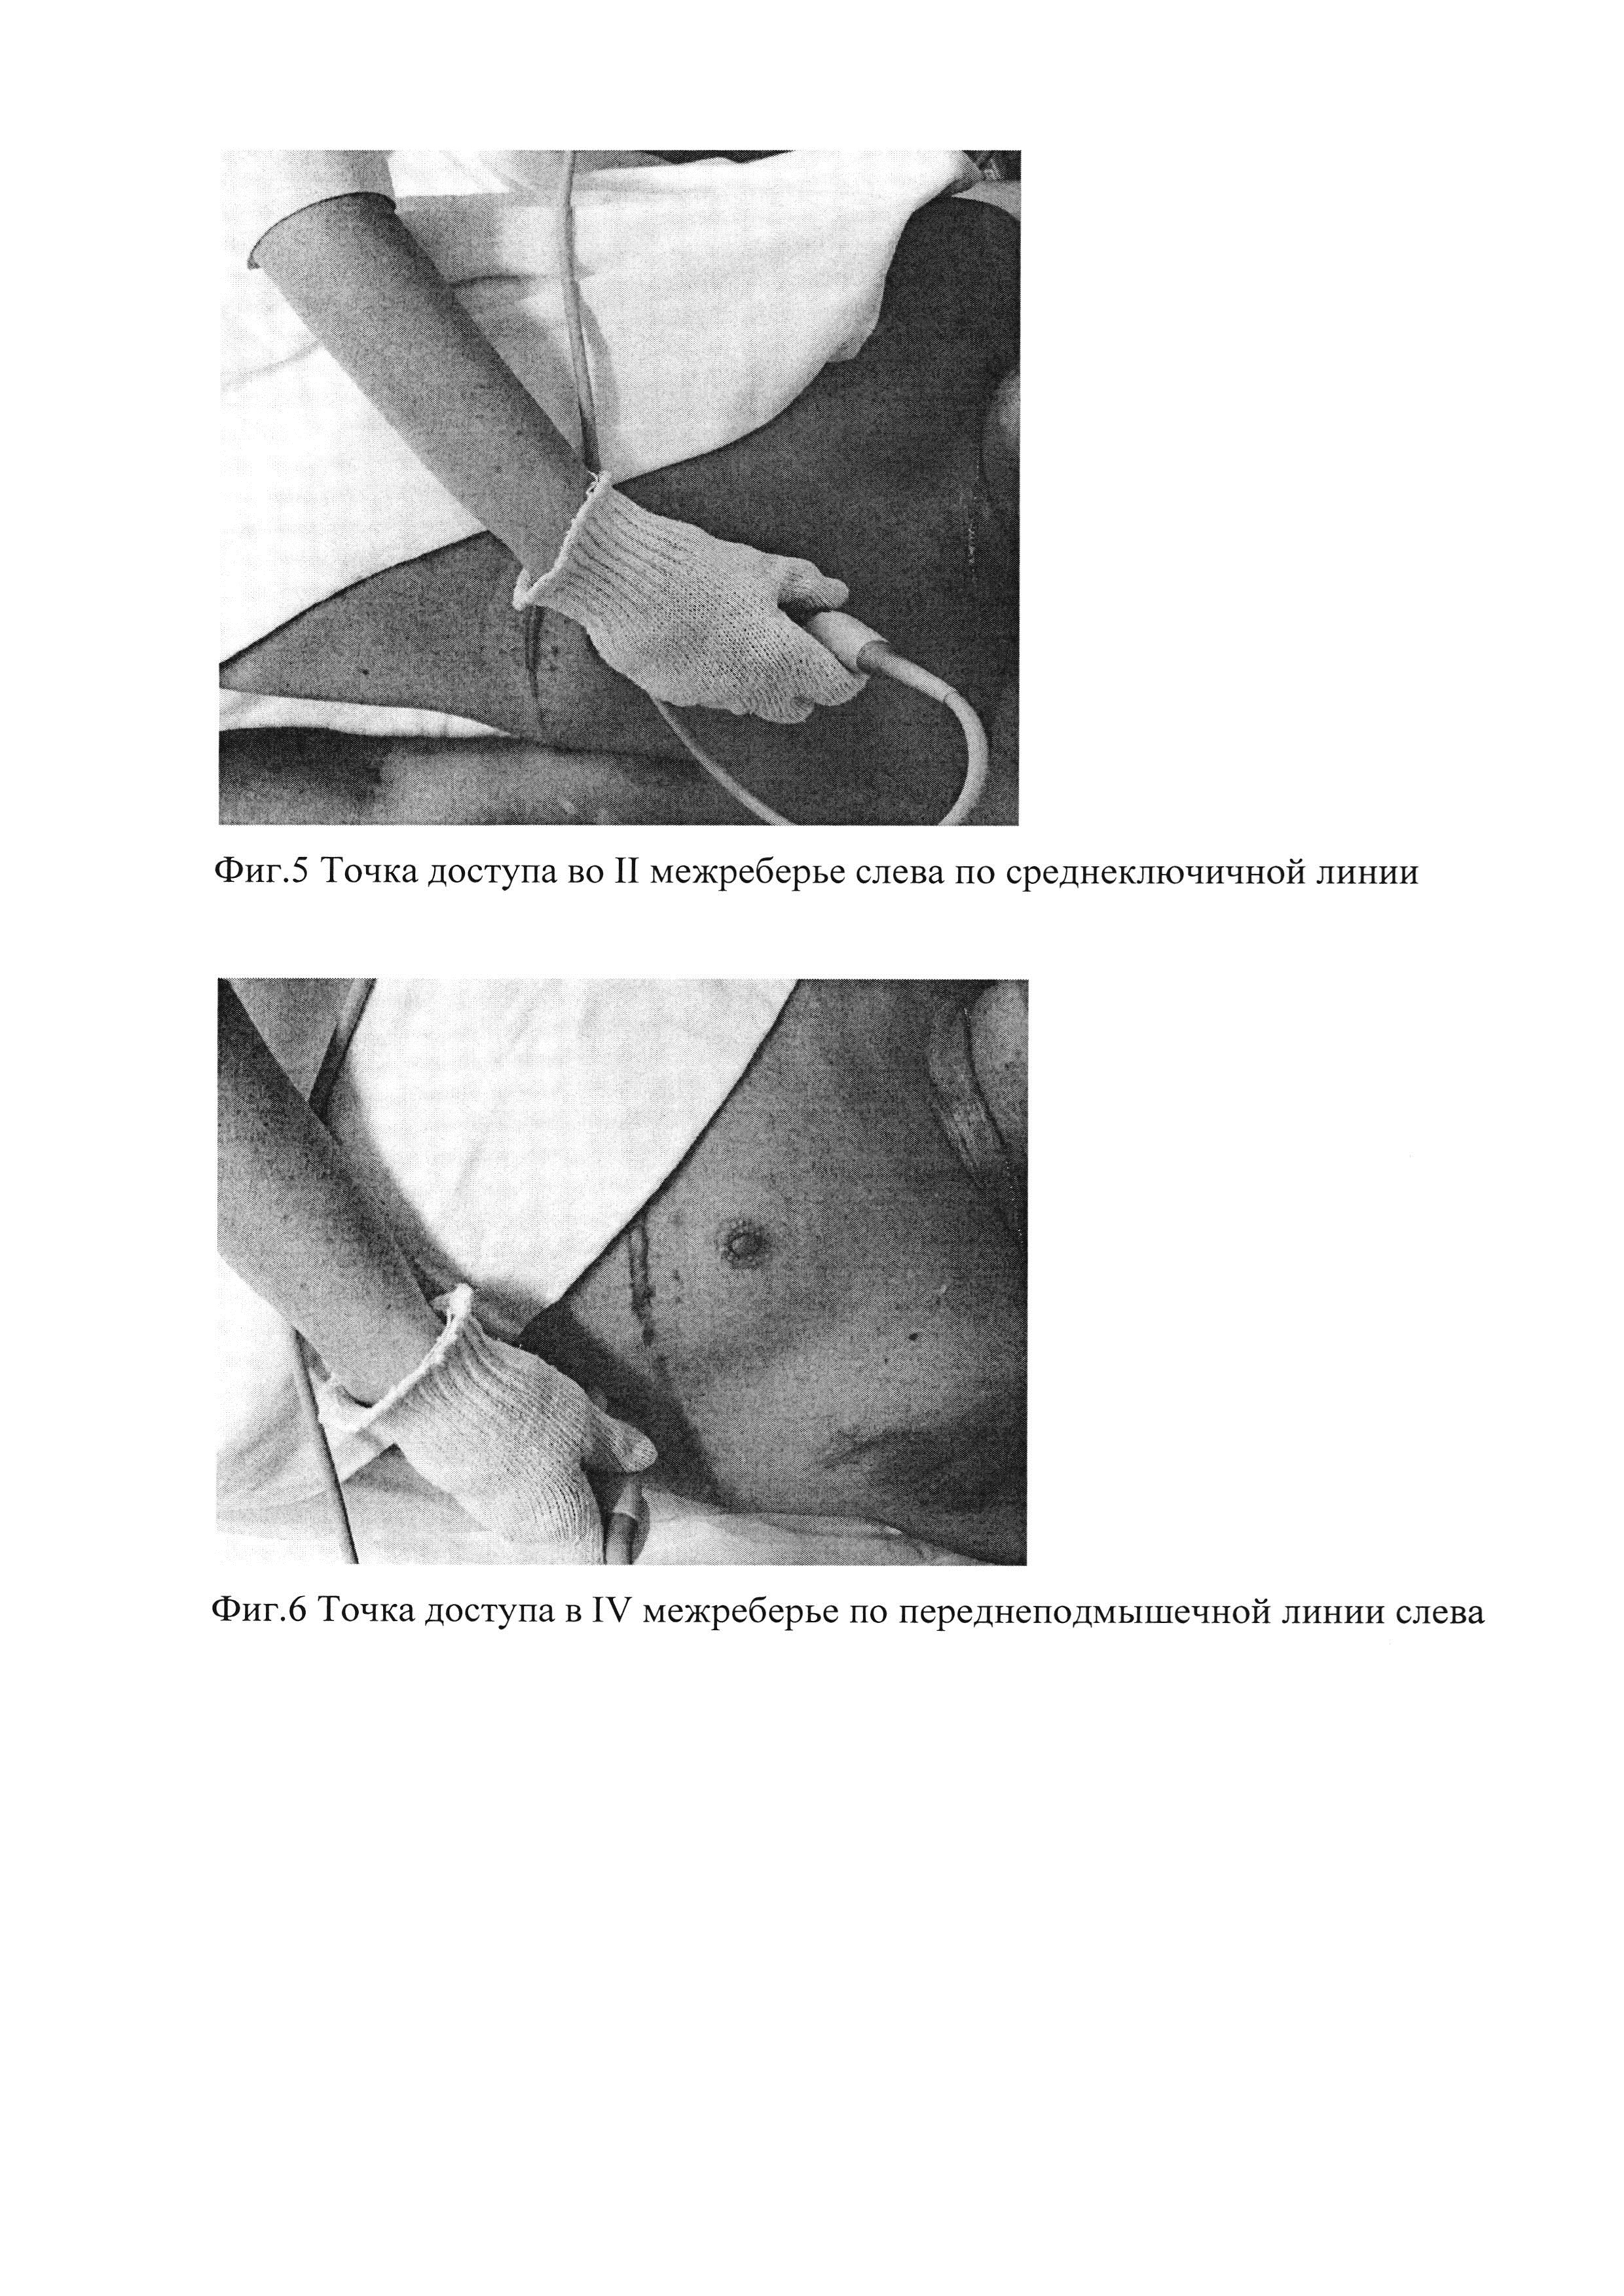 Способ эхокардиографии у пациентов после операции пневмонэктомии в отдаленном периоде